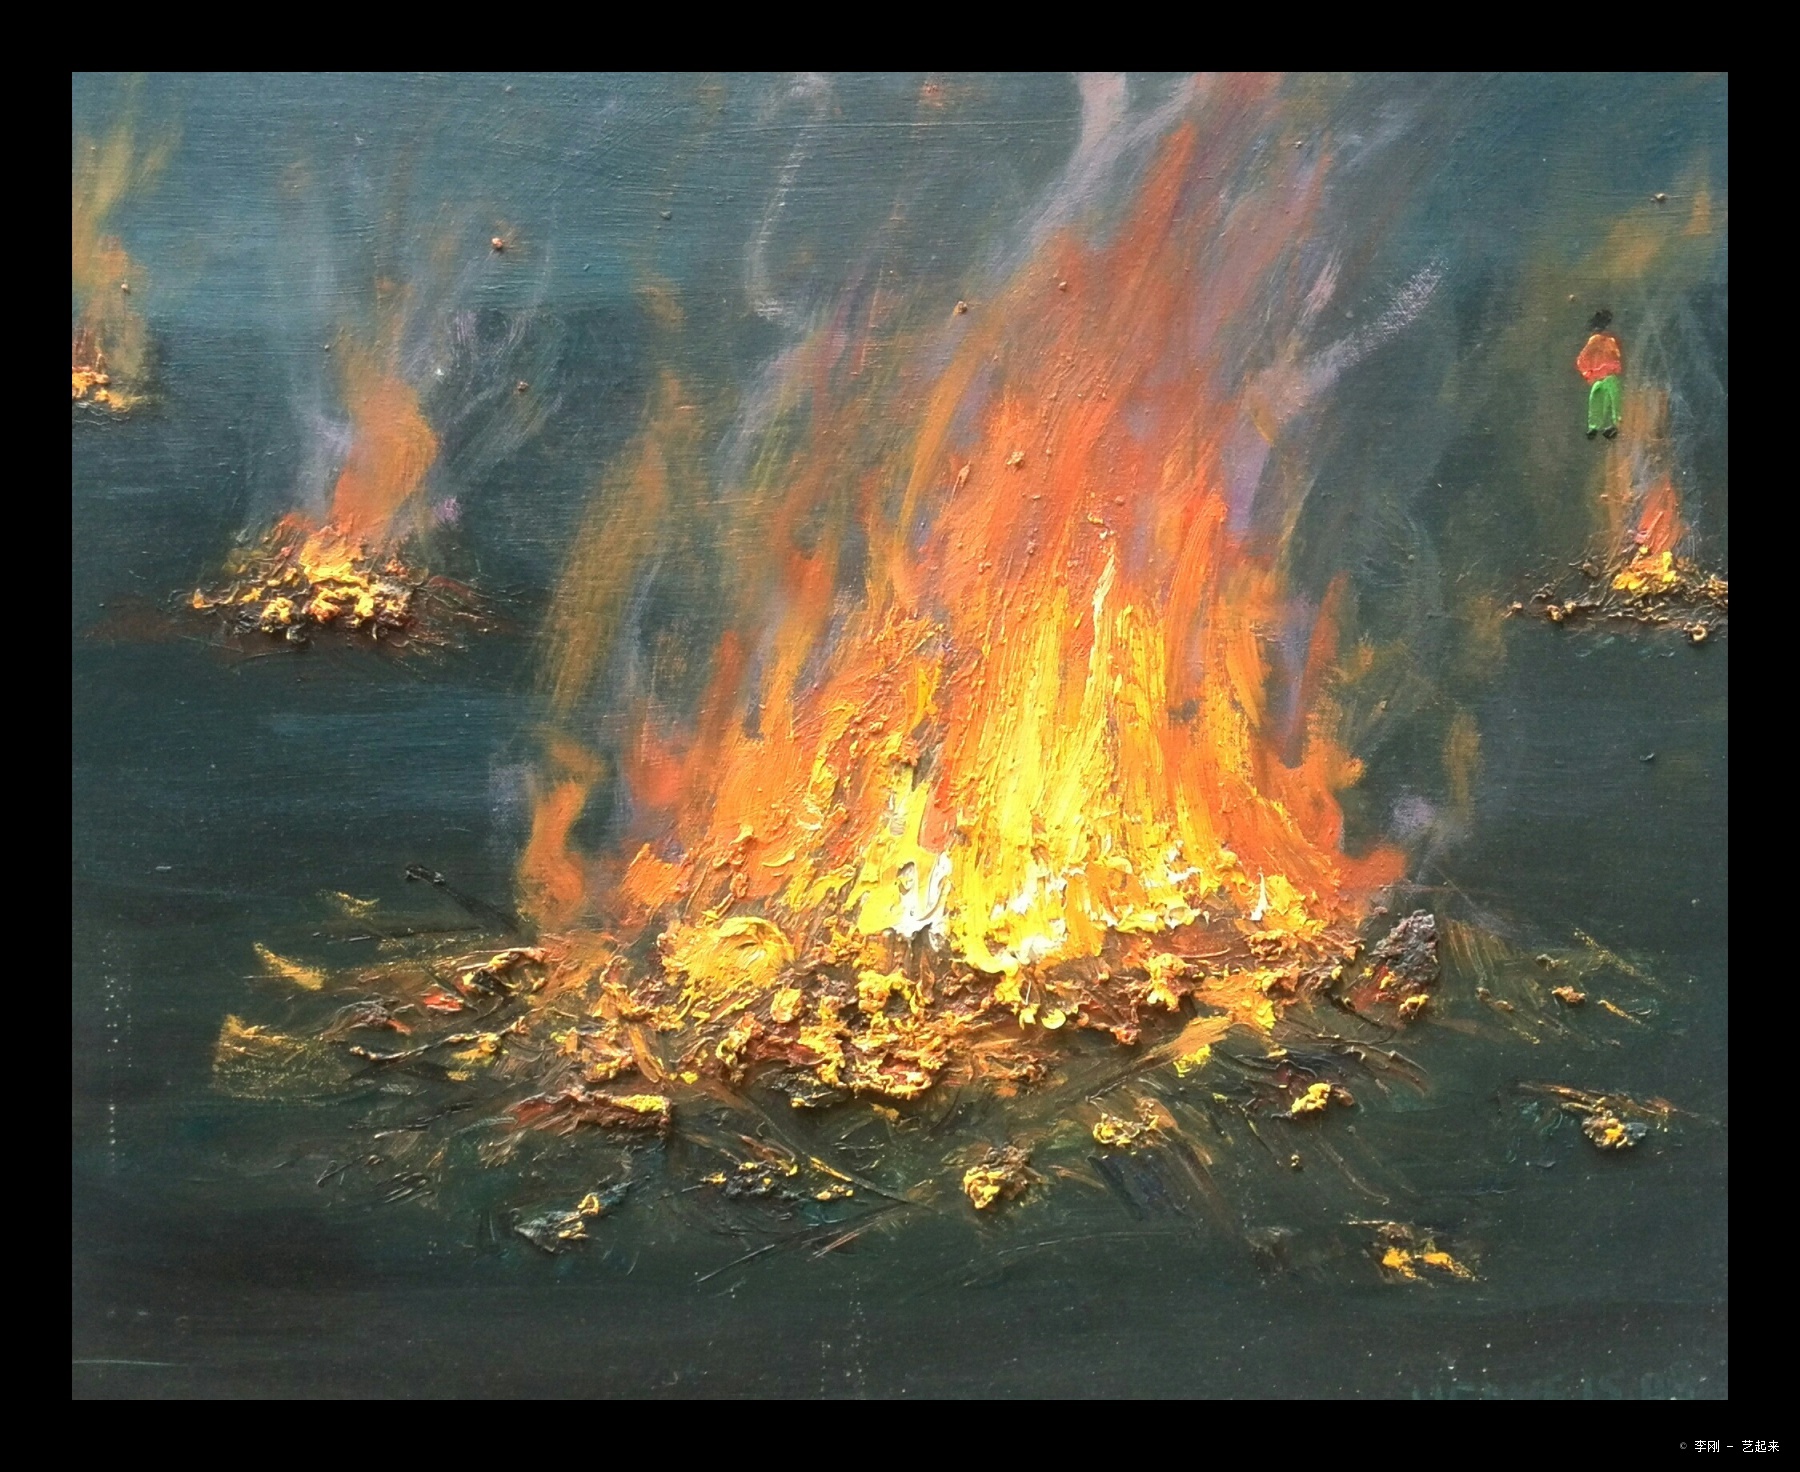 《火》,李刚, 2016年布面油画 